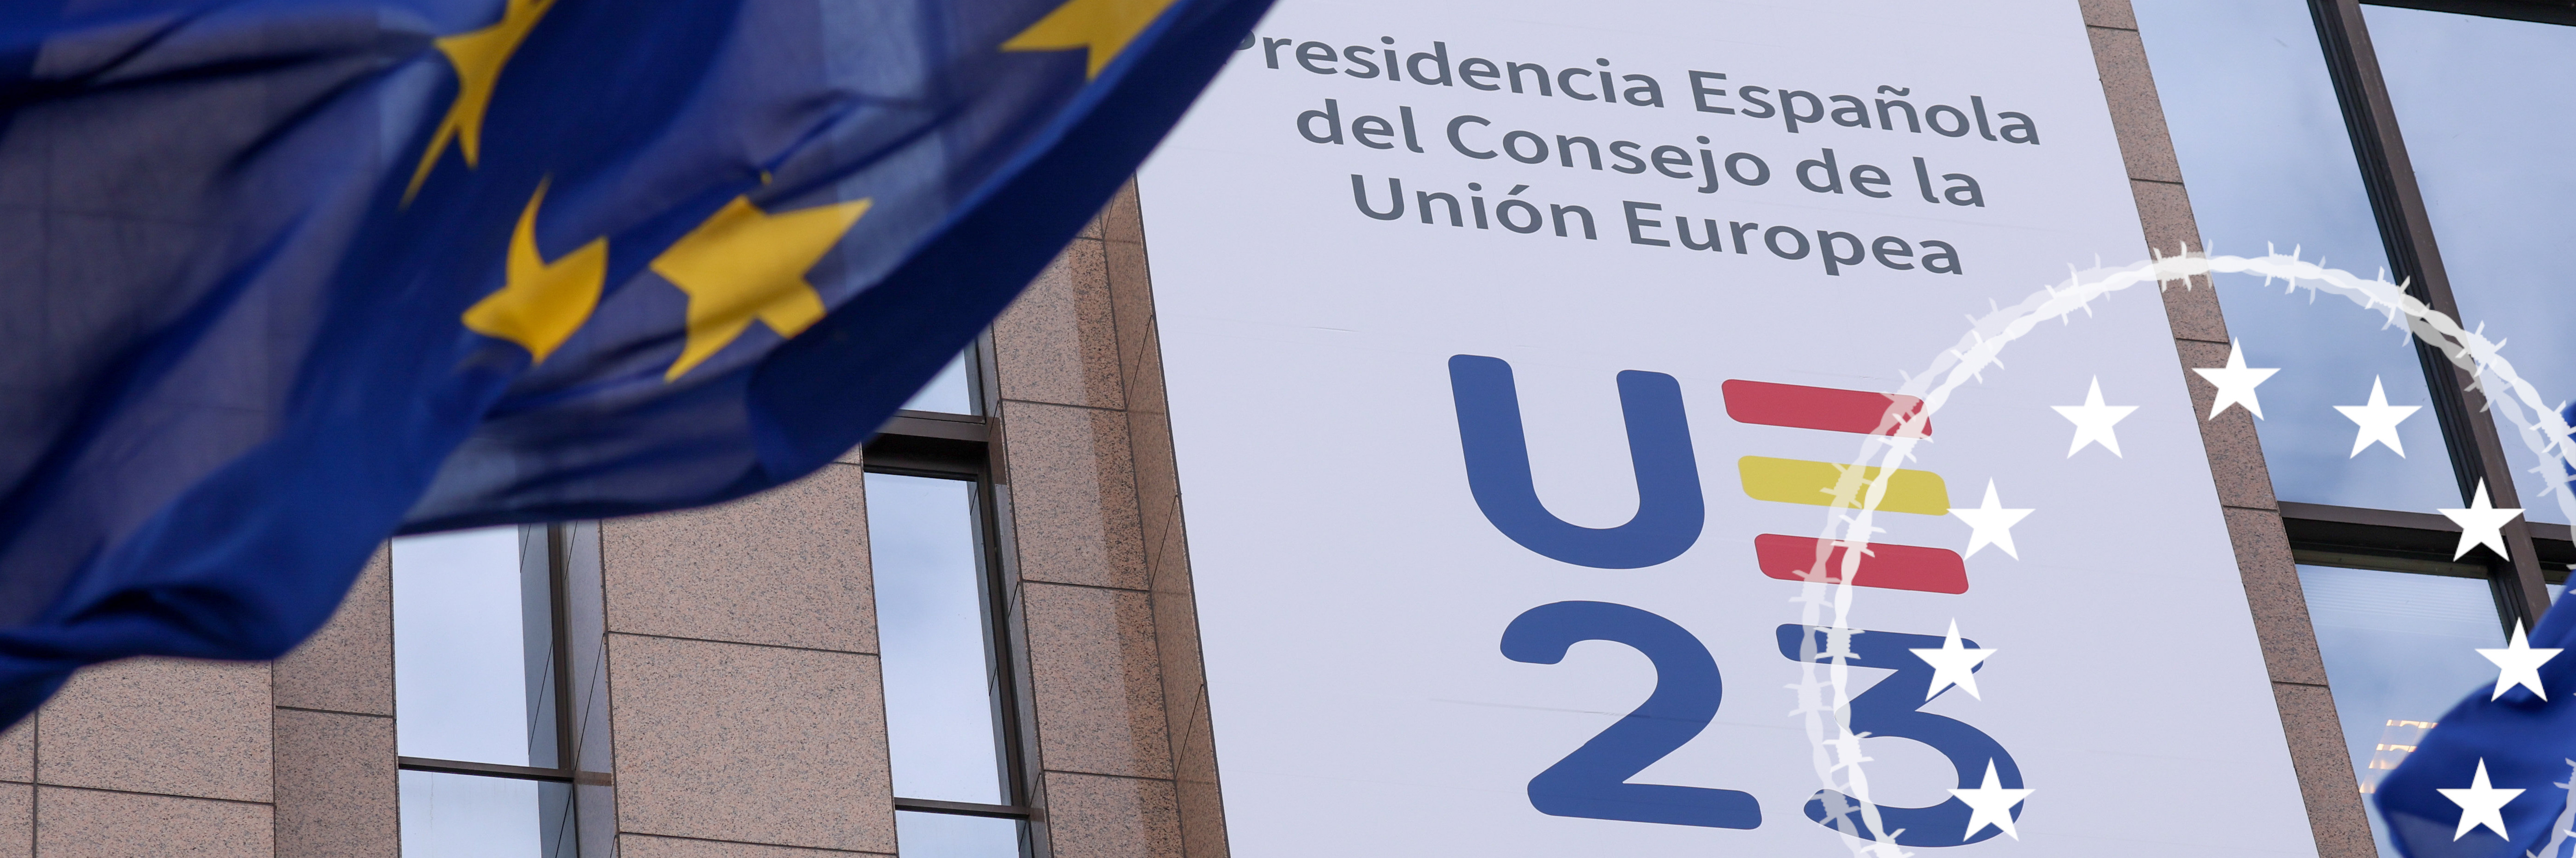 Spanischer Ratsvorsitz: Riesenplakat auf EU-Ratsgebäude